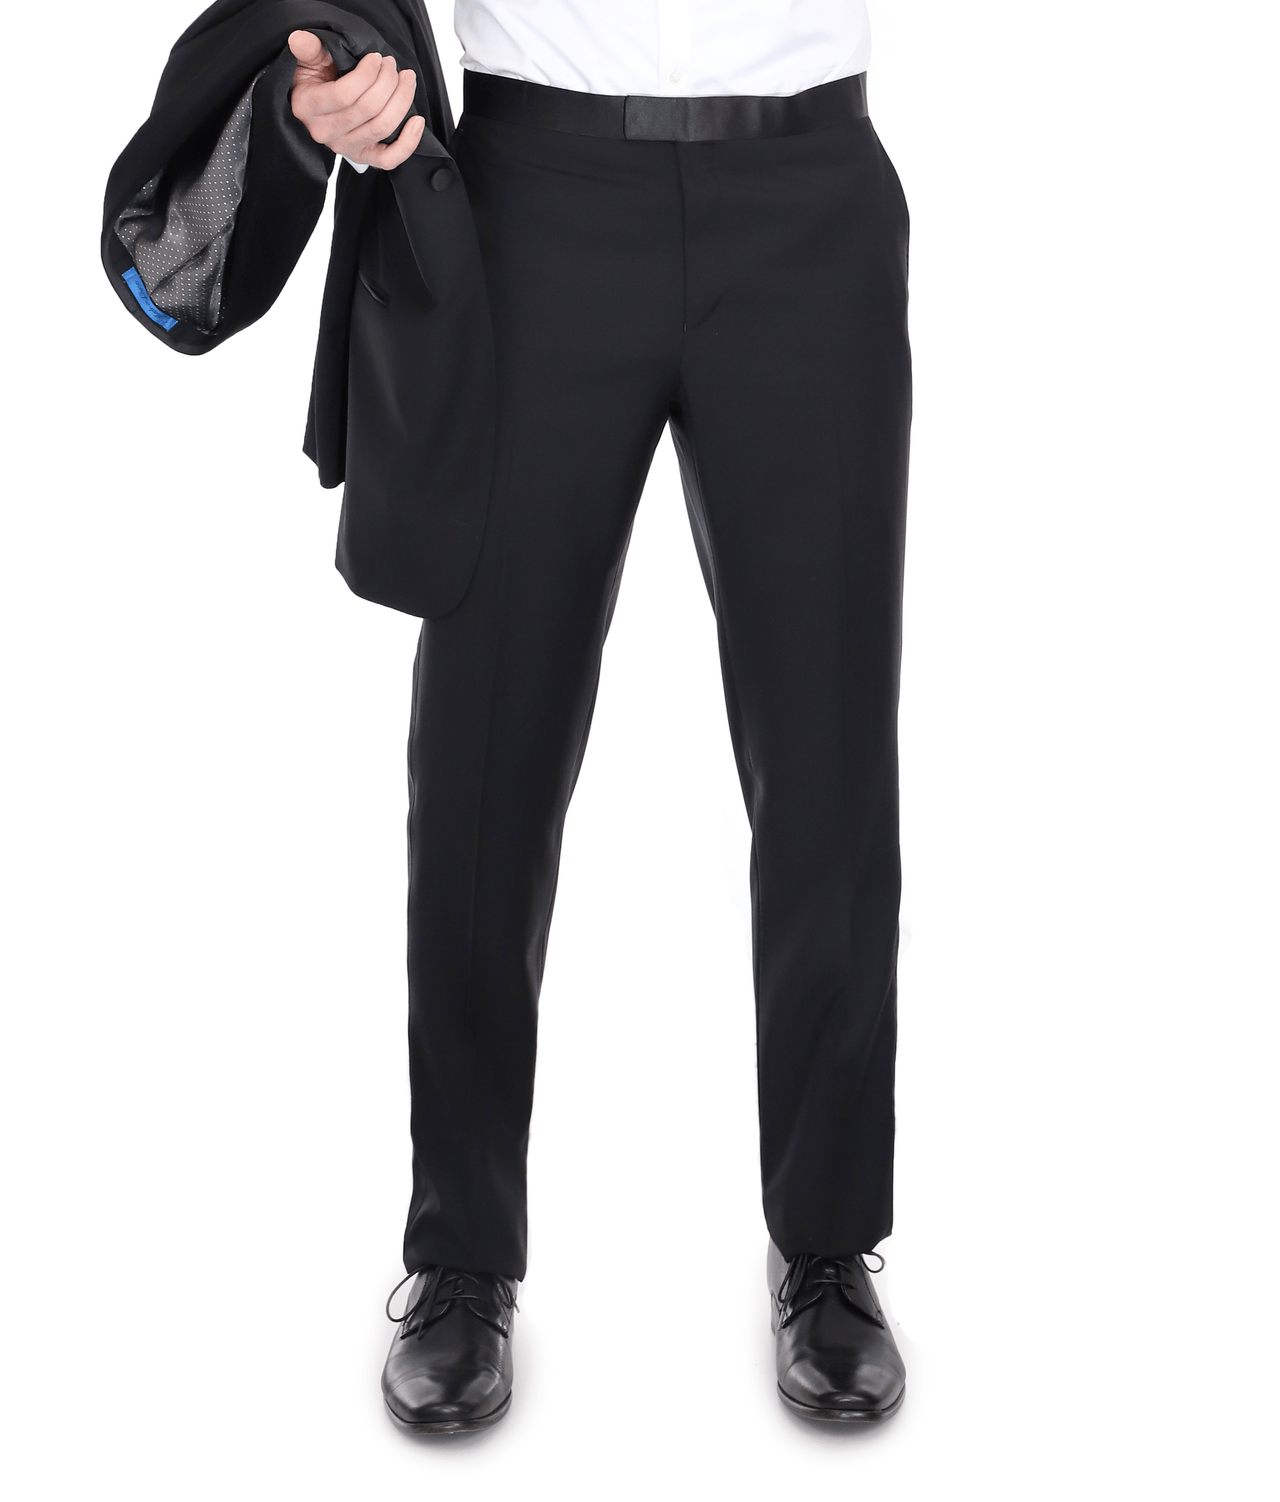 Blujacket SUITS Blujacket Men's Black Italian Wool Canvassed Slim Fit Shawl Lapel Tuxedo Suit